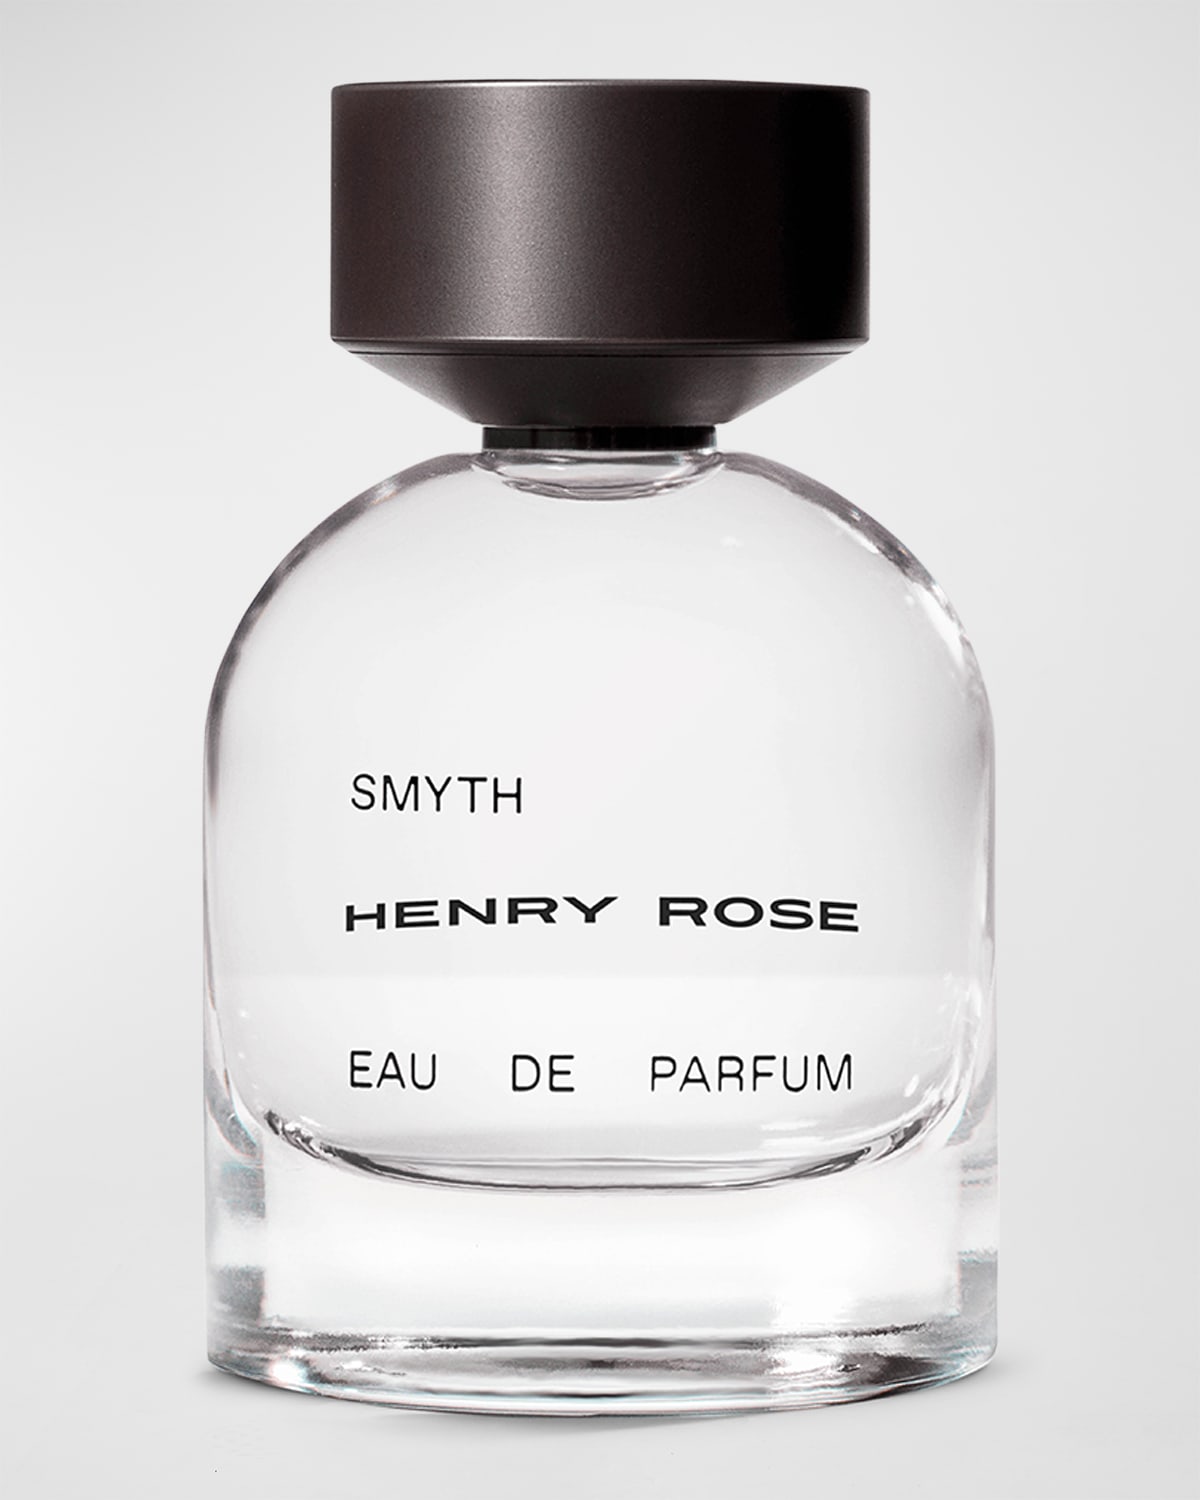 HENRY ROSE Smyth Eau de Parfum, 1.7 oz.